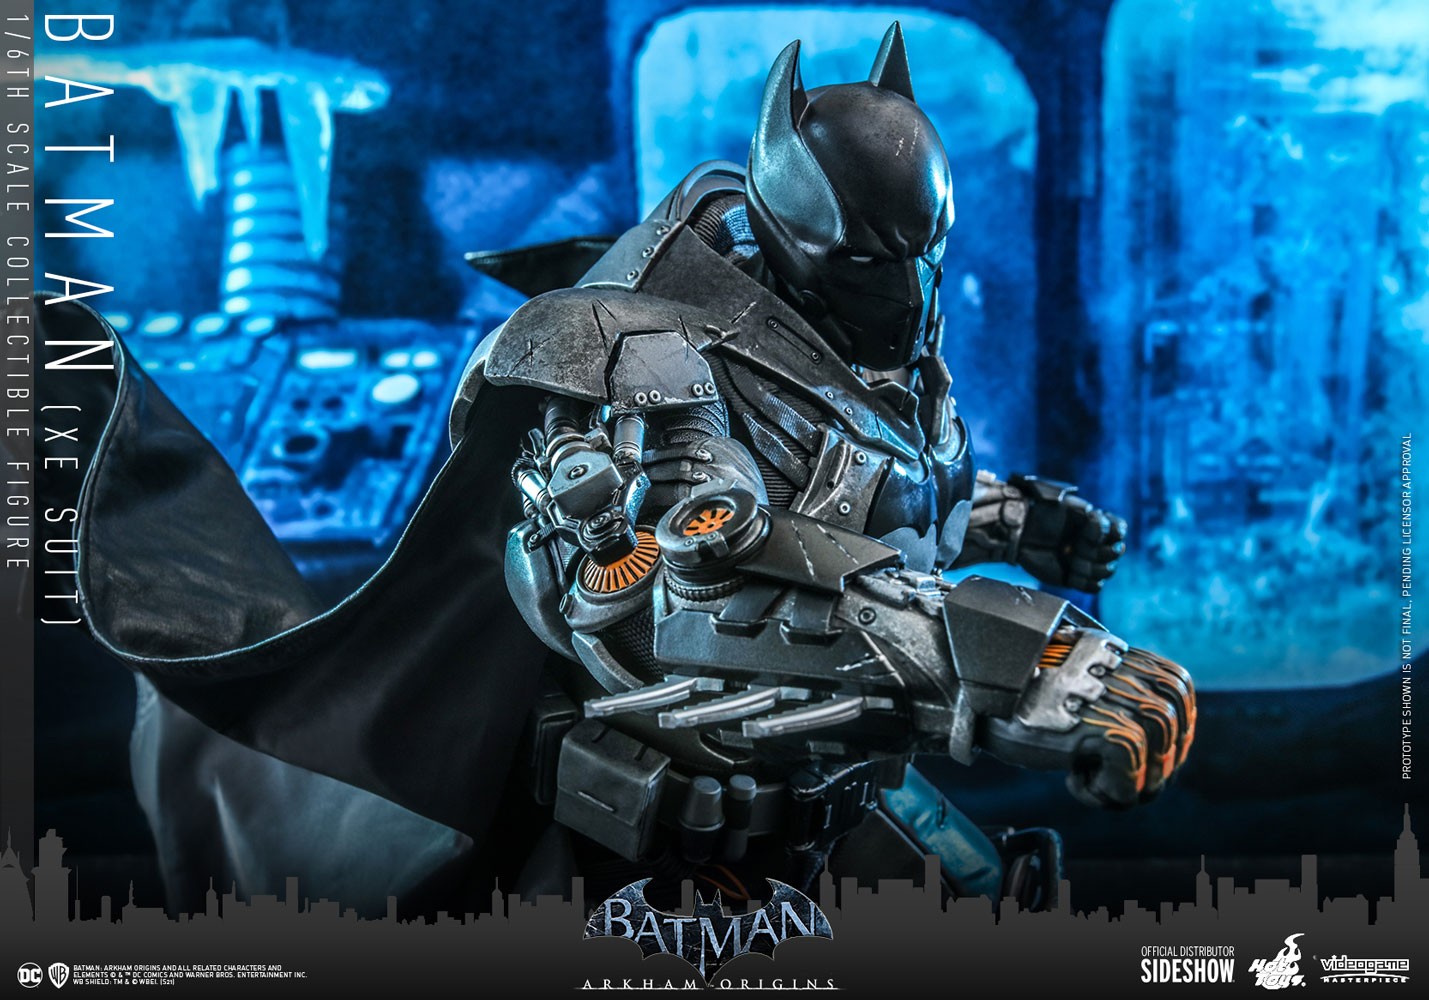 Batman (XE Suit) Collector Edition - Prototype Shown